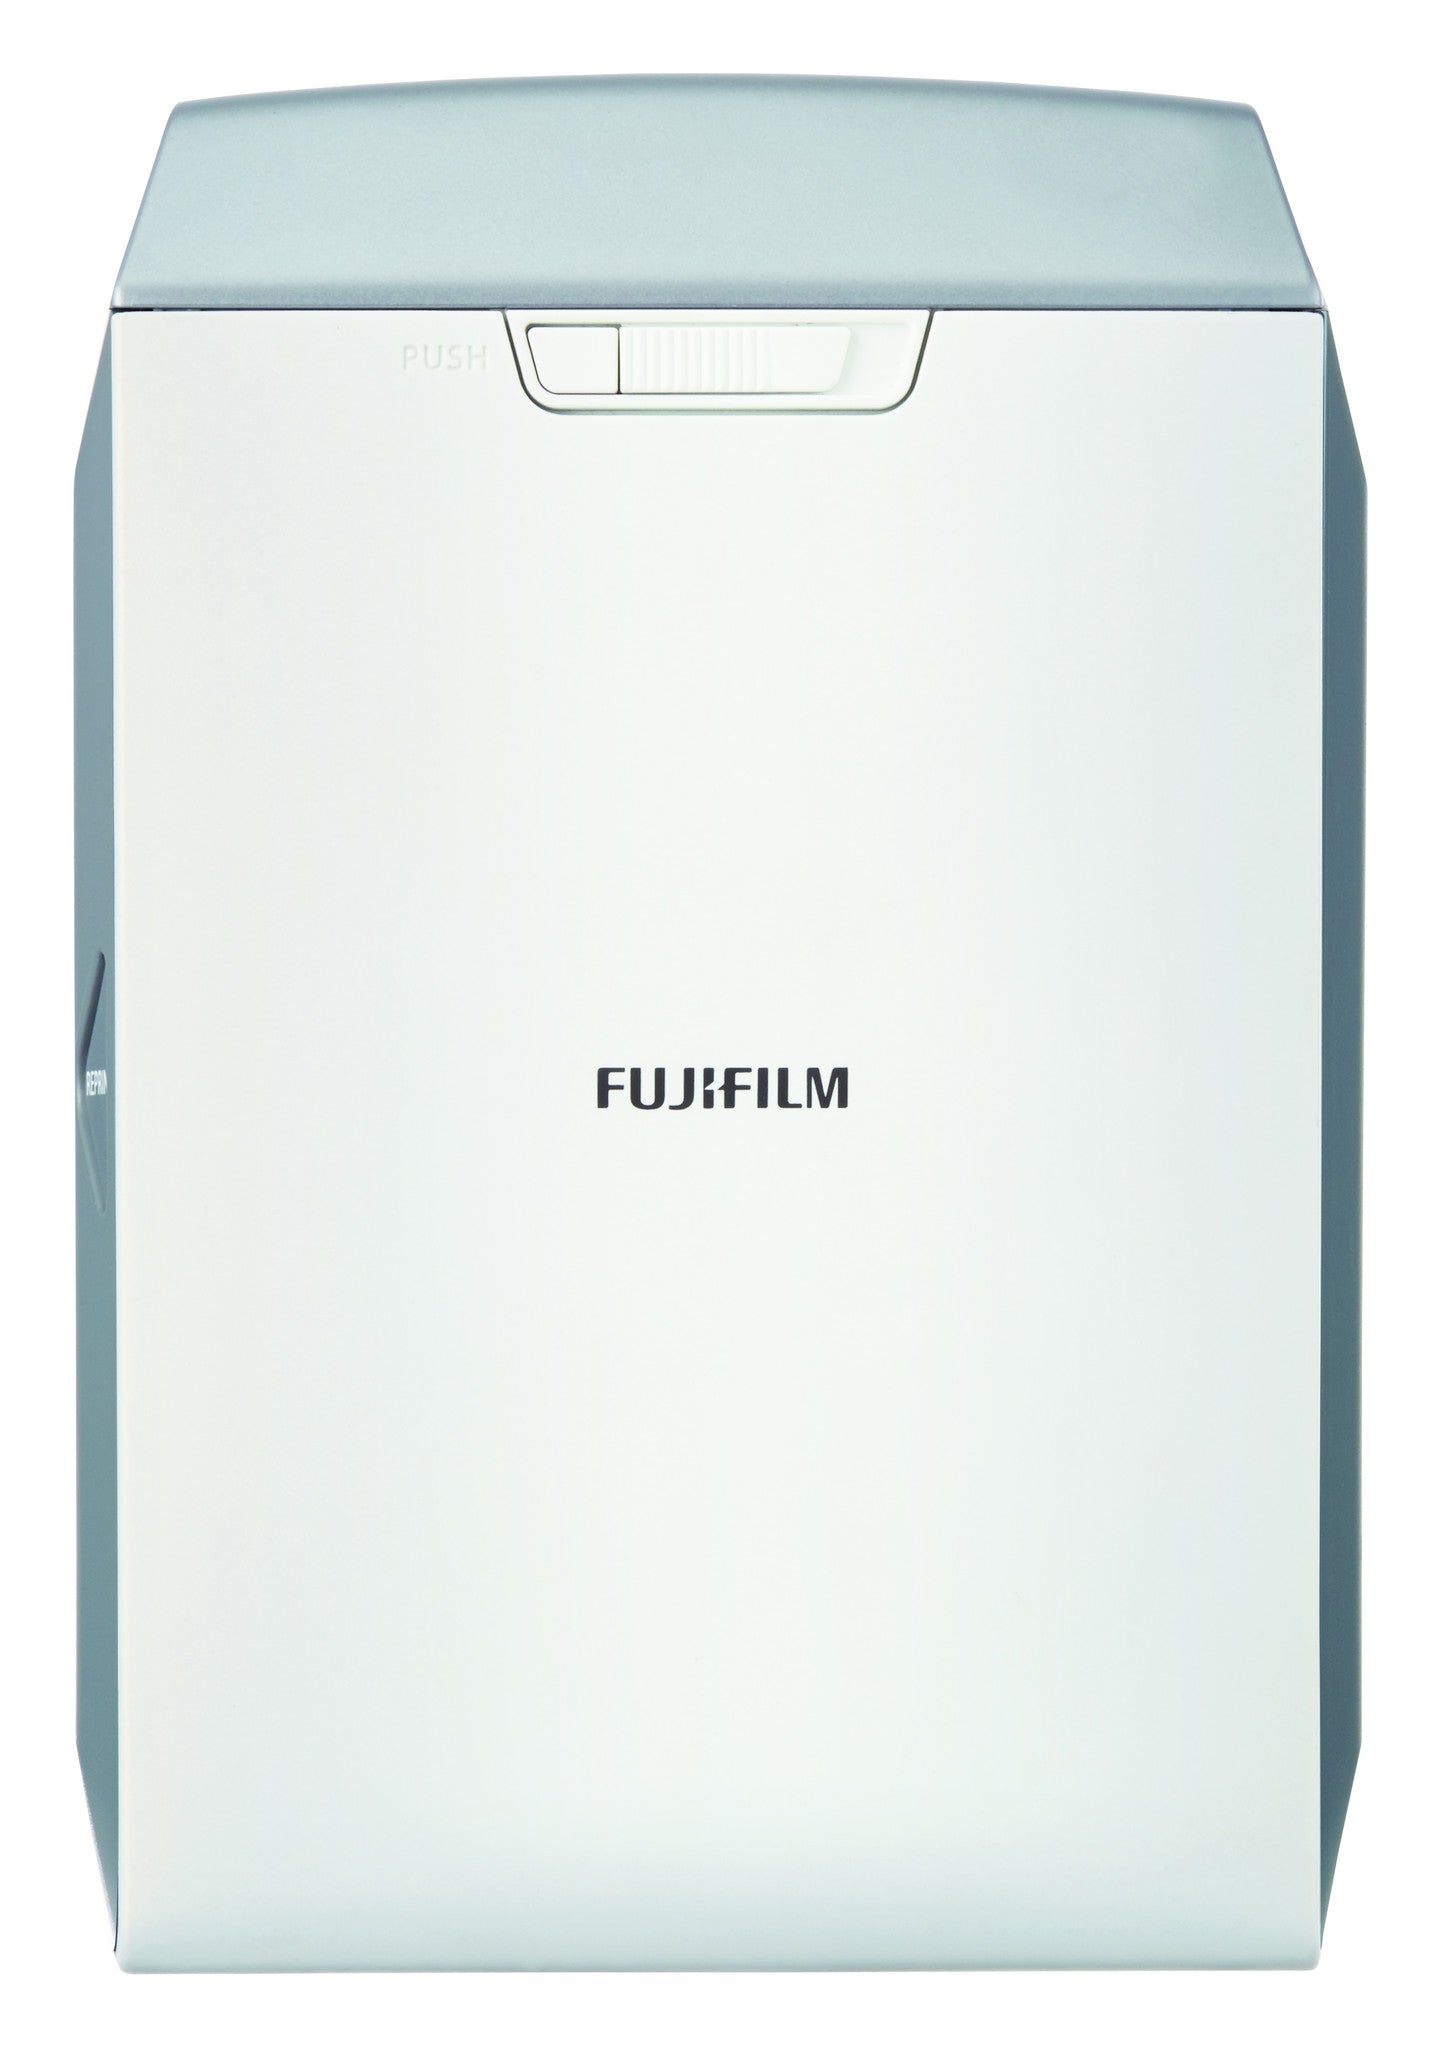 Fujifilm INSTAX Share Smartphone Printer SP-2 Silver, printers small format, Fujifilm - Pictureline  - 1